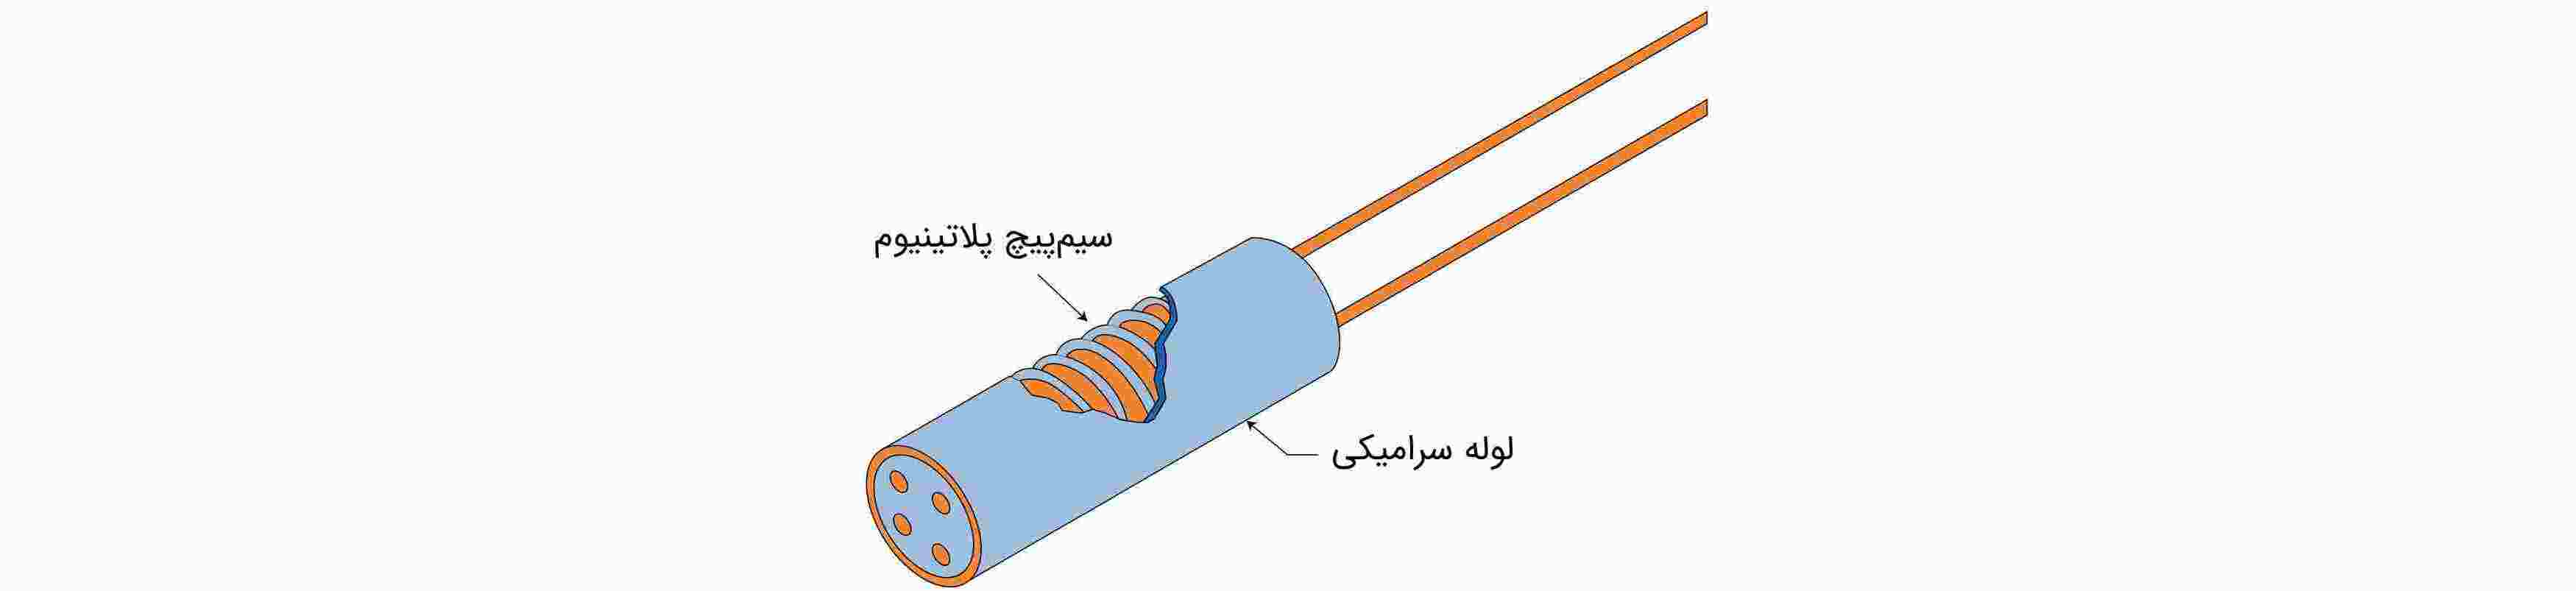 دماسنج مقاومت الکتریکی